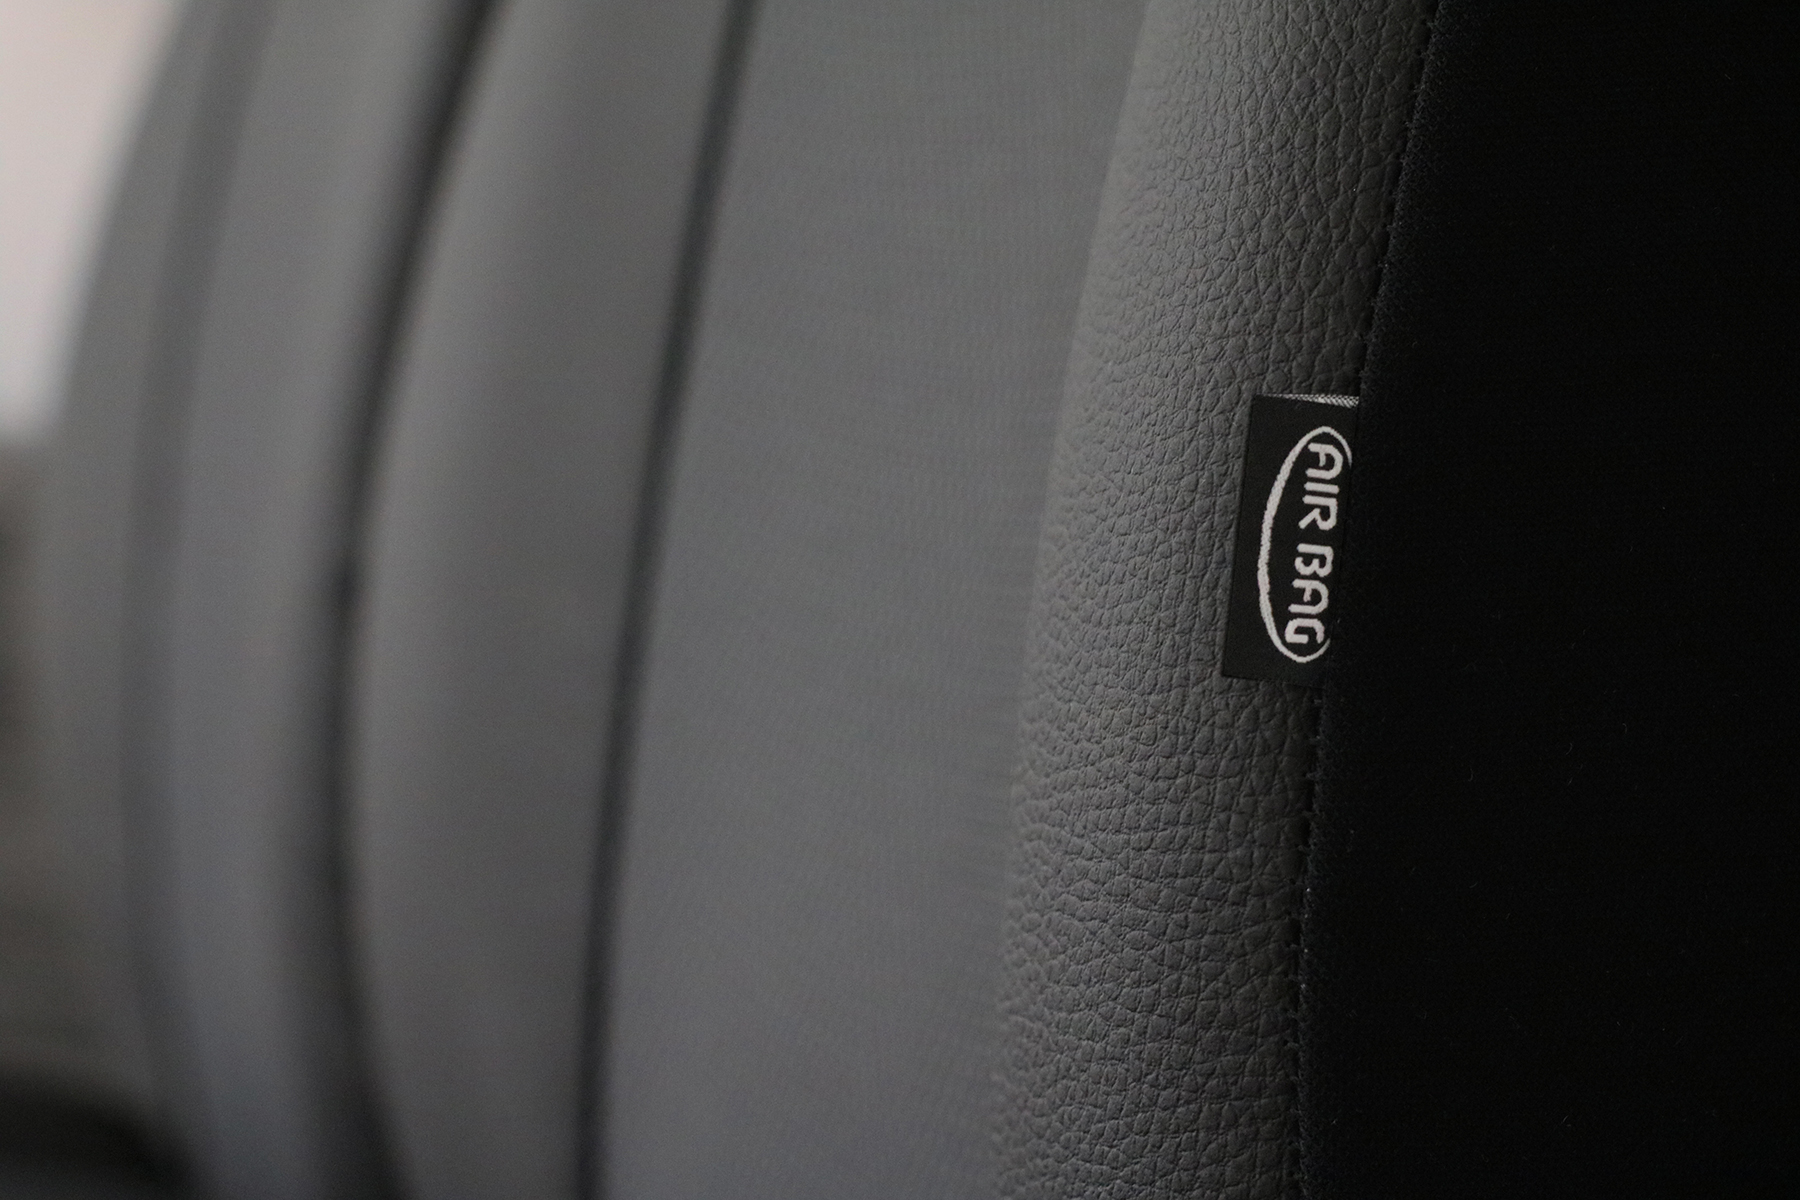 Maßgenauer Sitzbezug S-Type für Audi Q2 Q3 - Maluch Premium Autozubehör